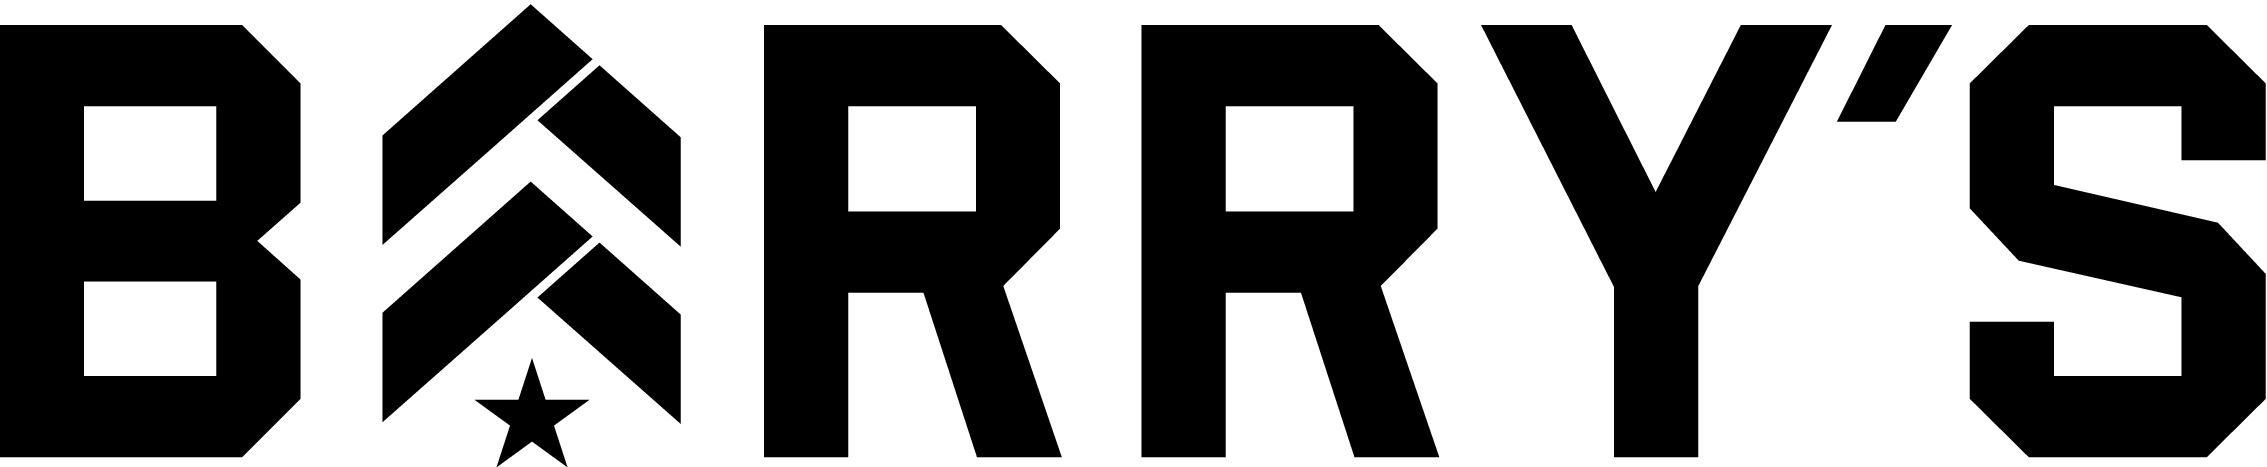 Barry Logo - Barry's Logo - Weingarten Realty Blog